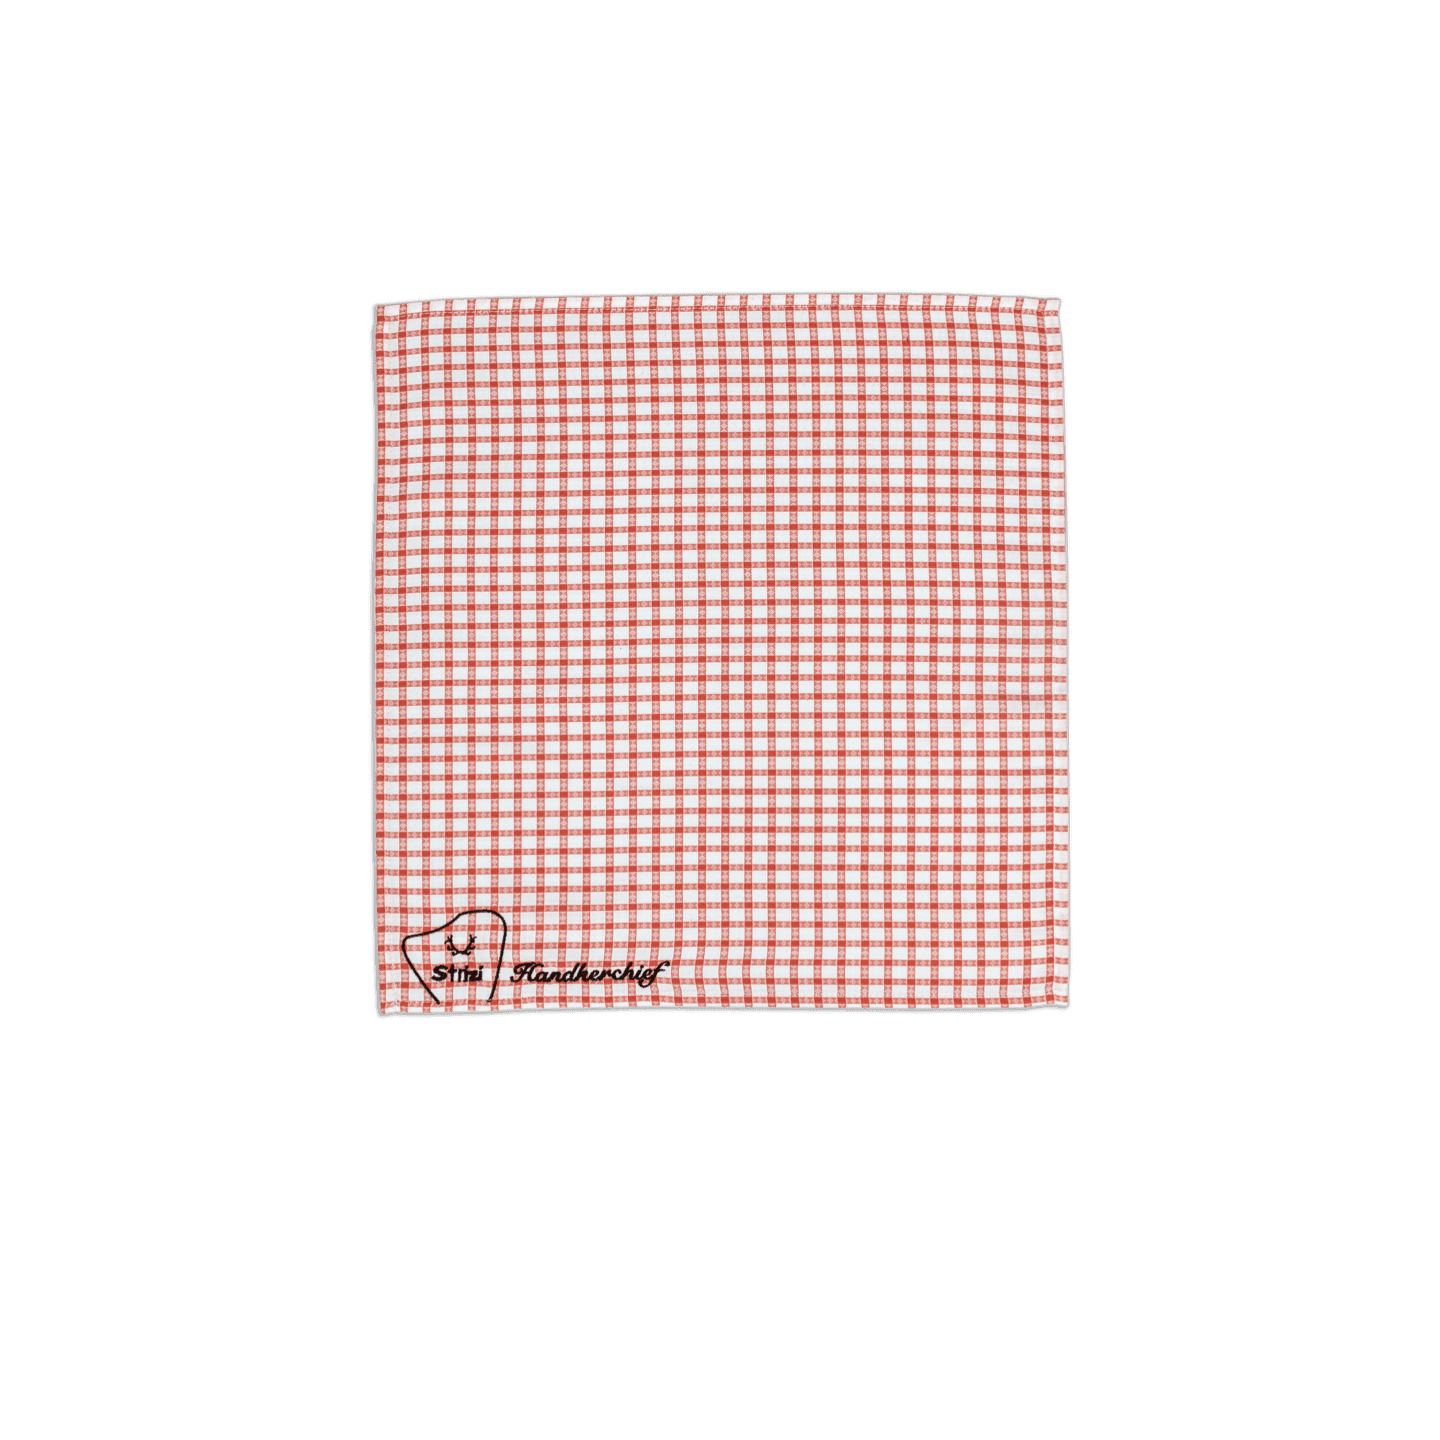 Strizi Stofftaschentuch 2 - Strizi Handkerchief red